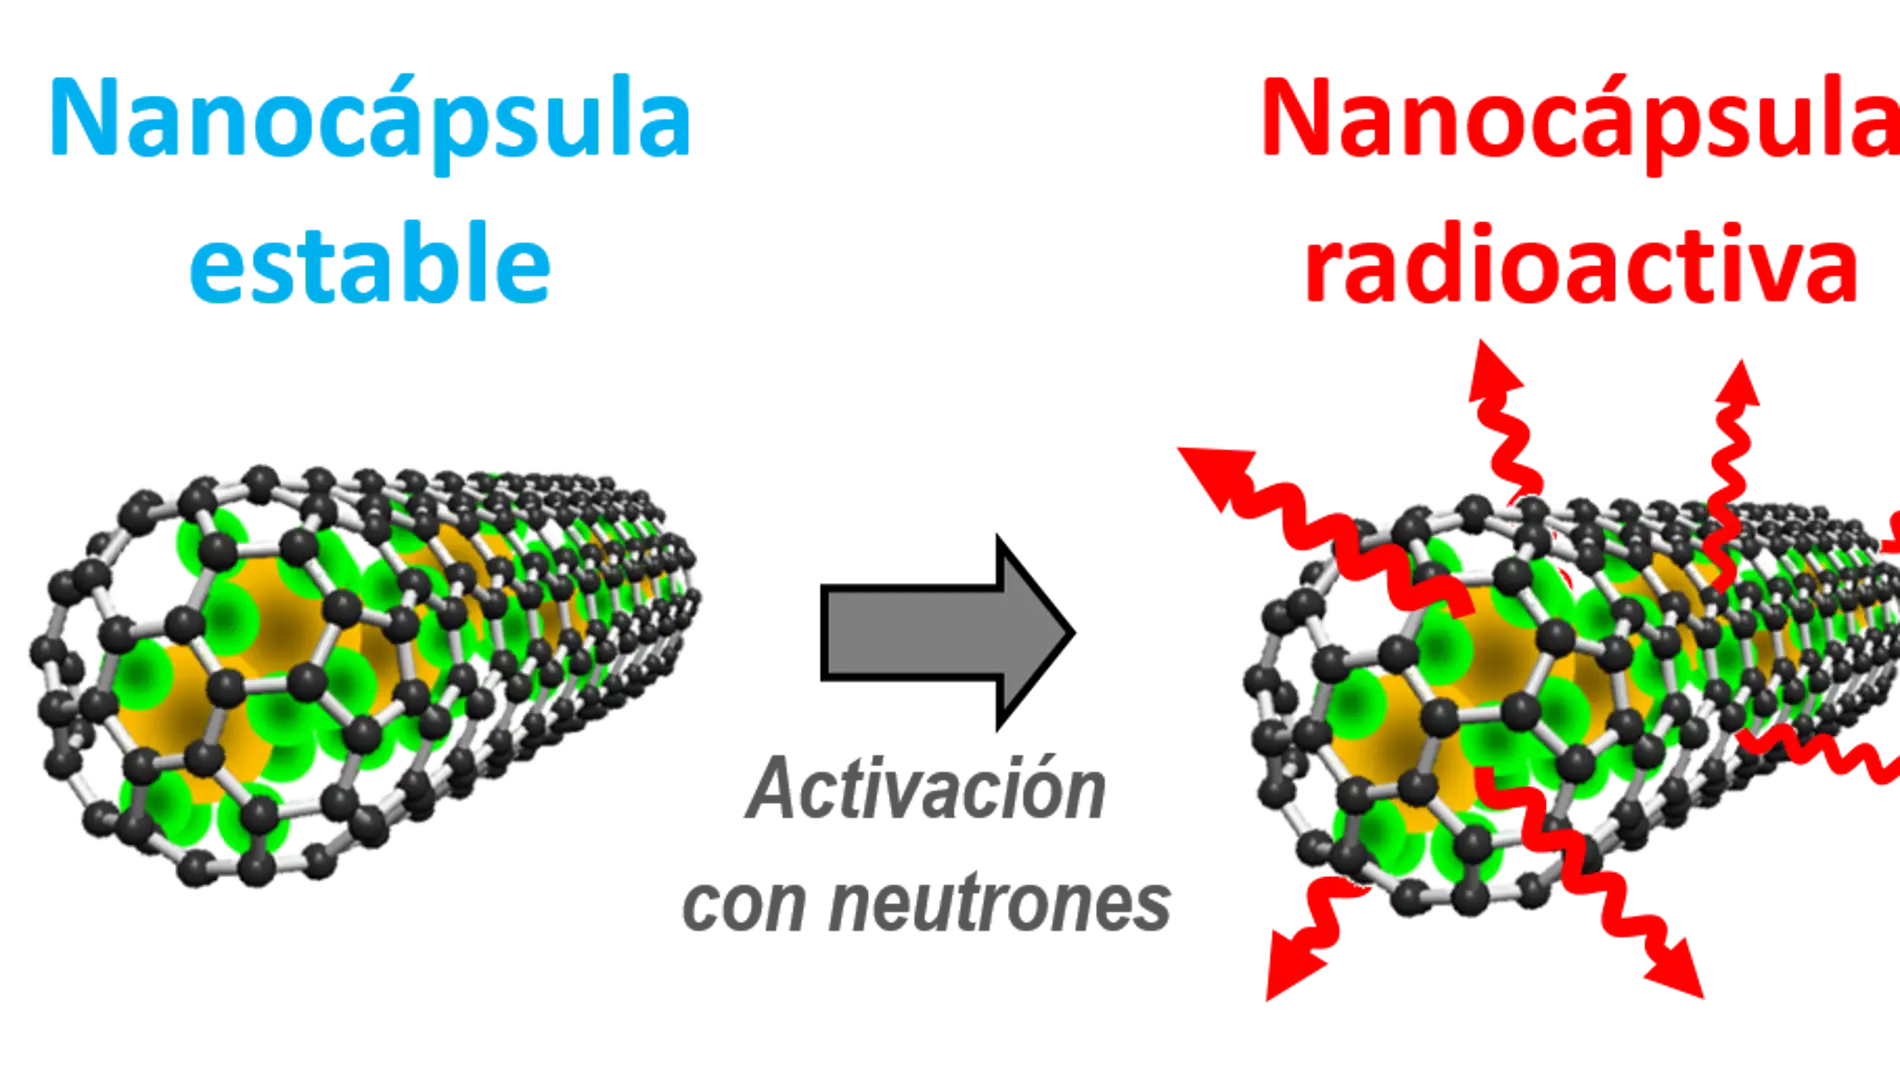 Nanocapsulas de carbono para la radioterapia contra el cancer